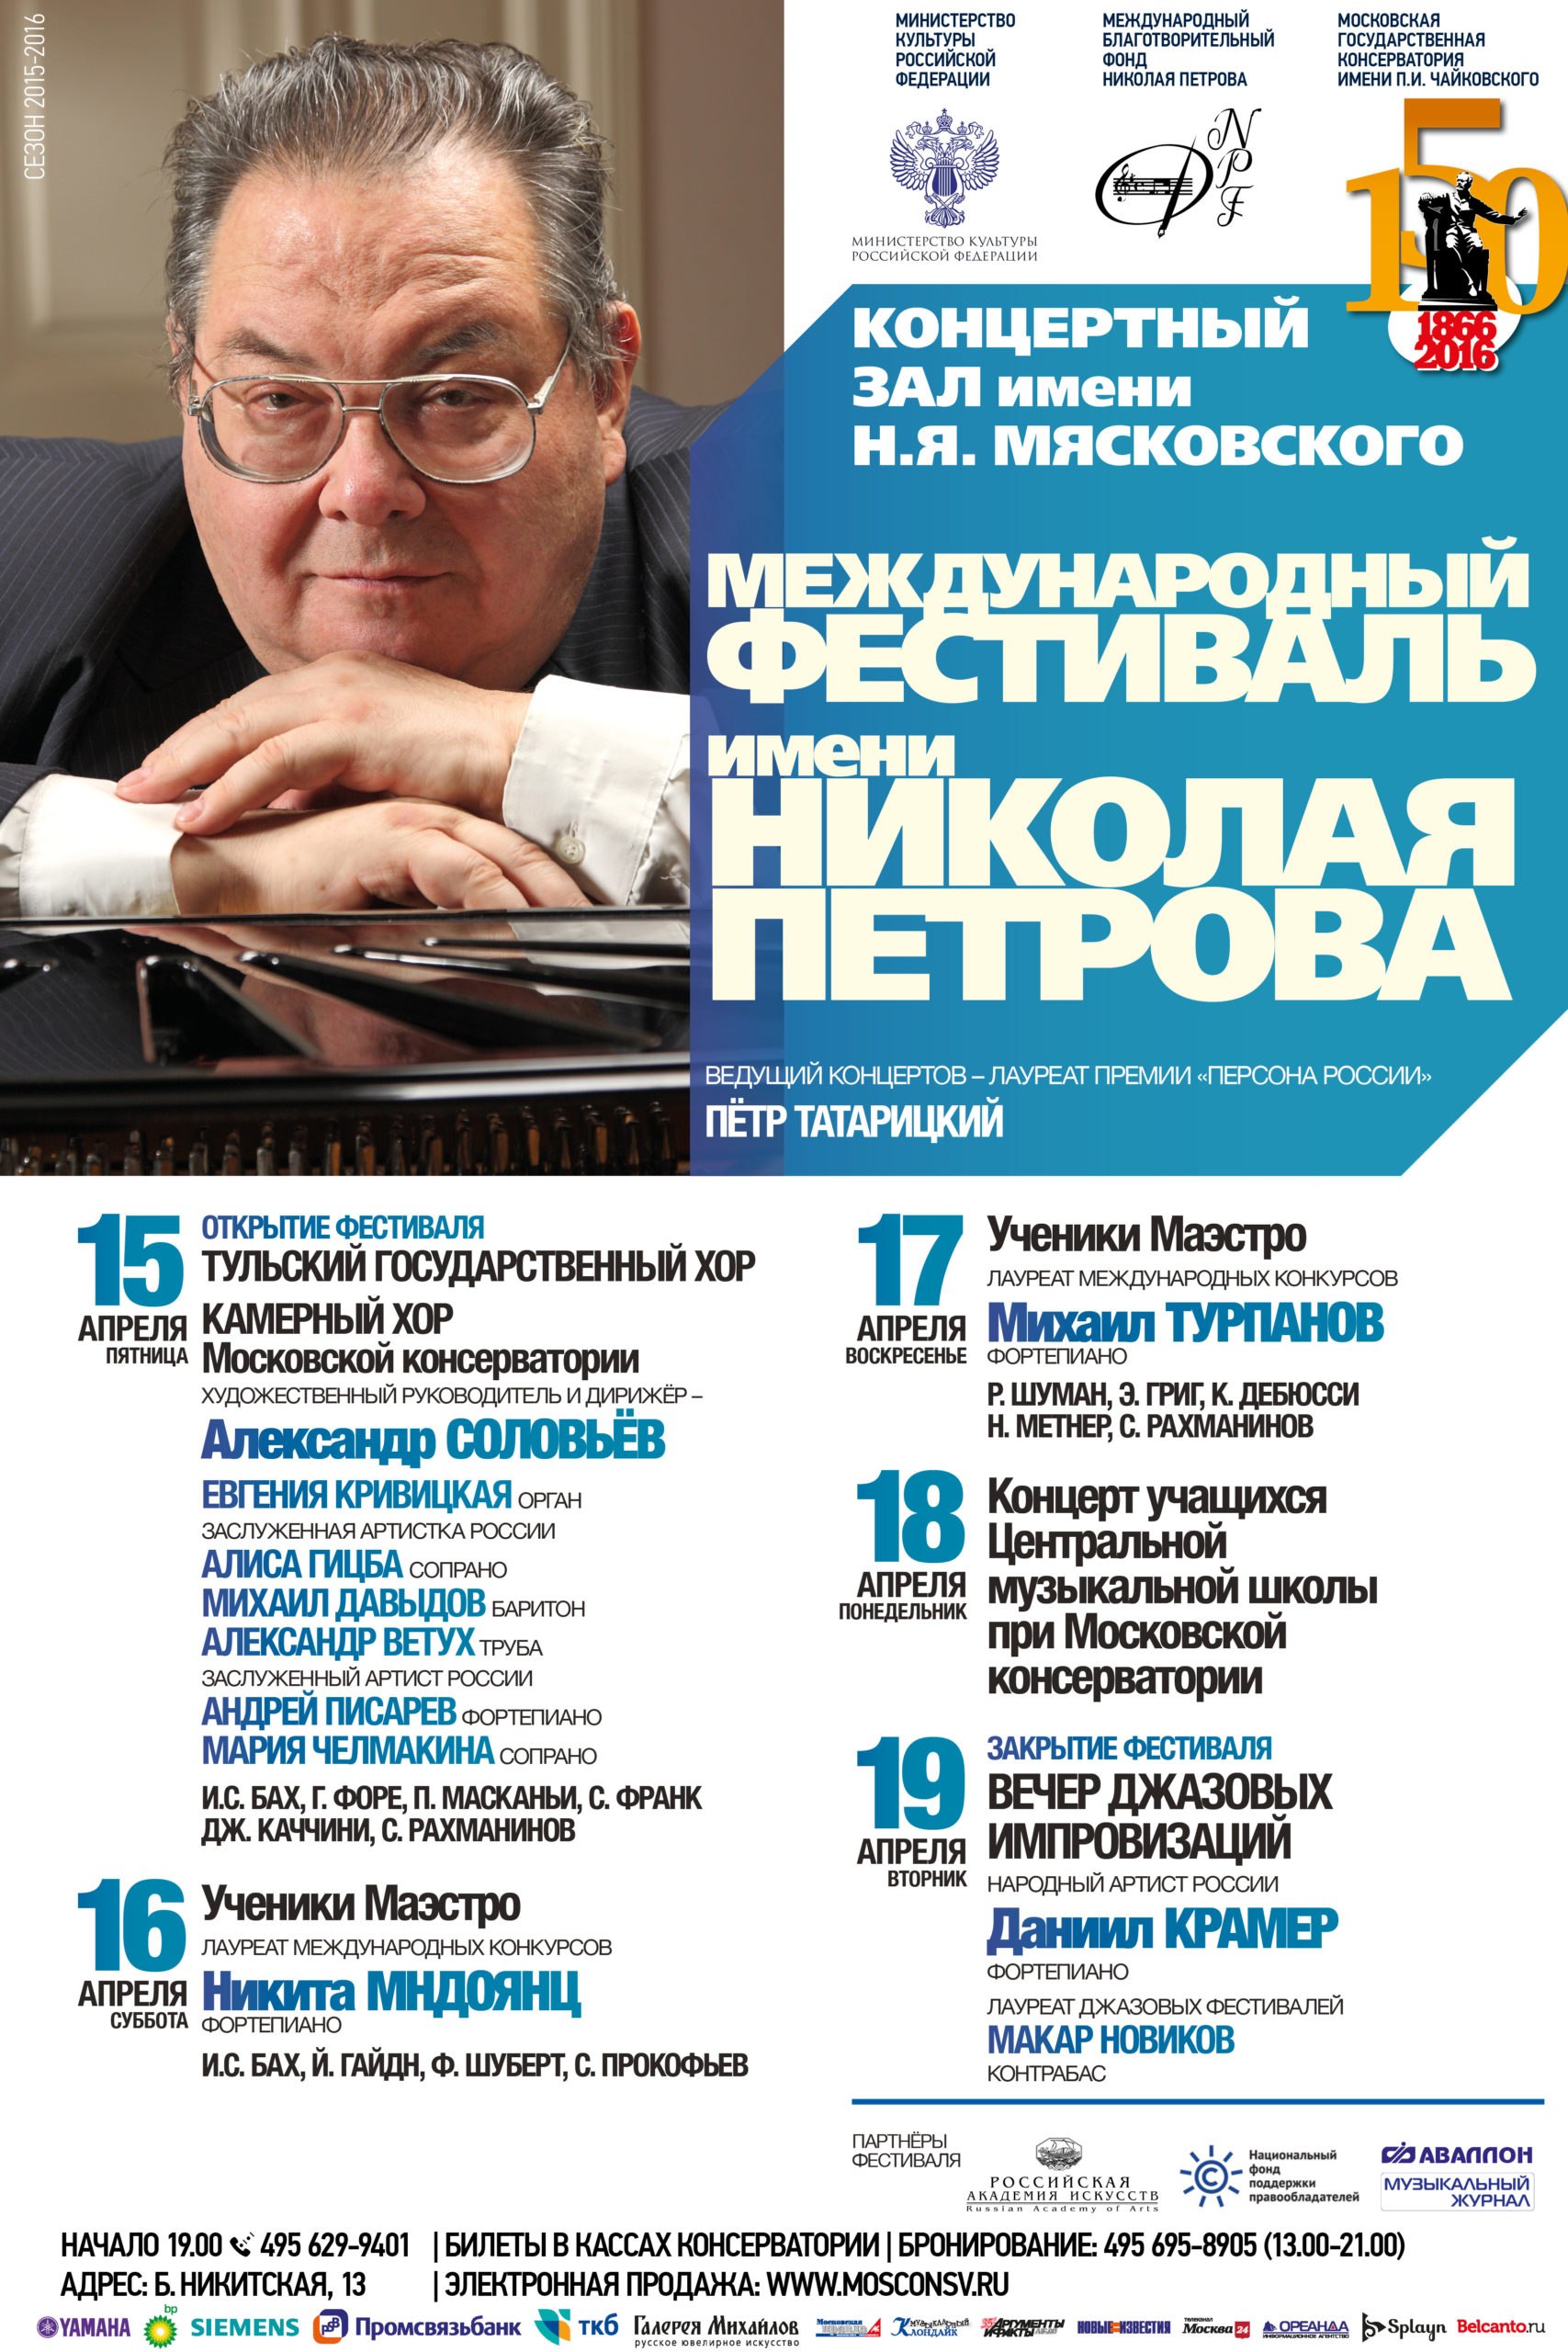 Международный фестиваль имени Николая Петрова проходит при поддержке НФПП